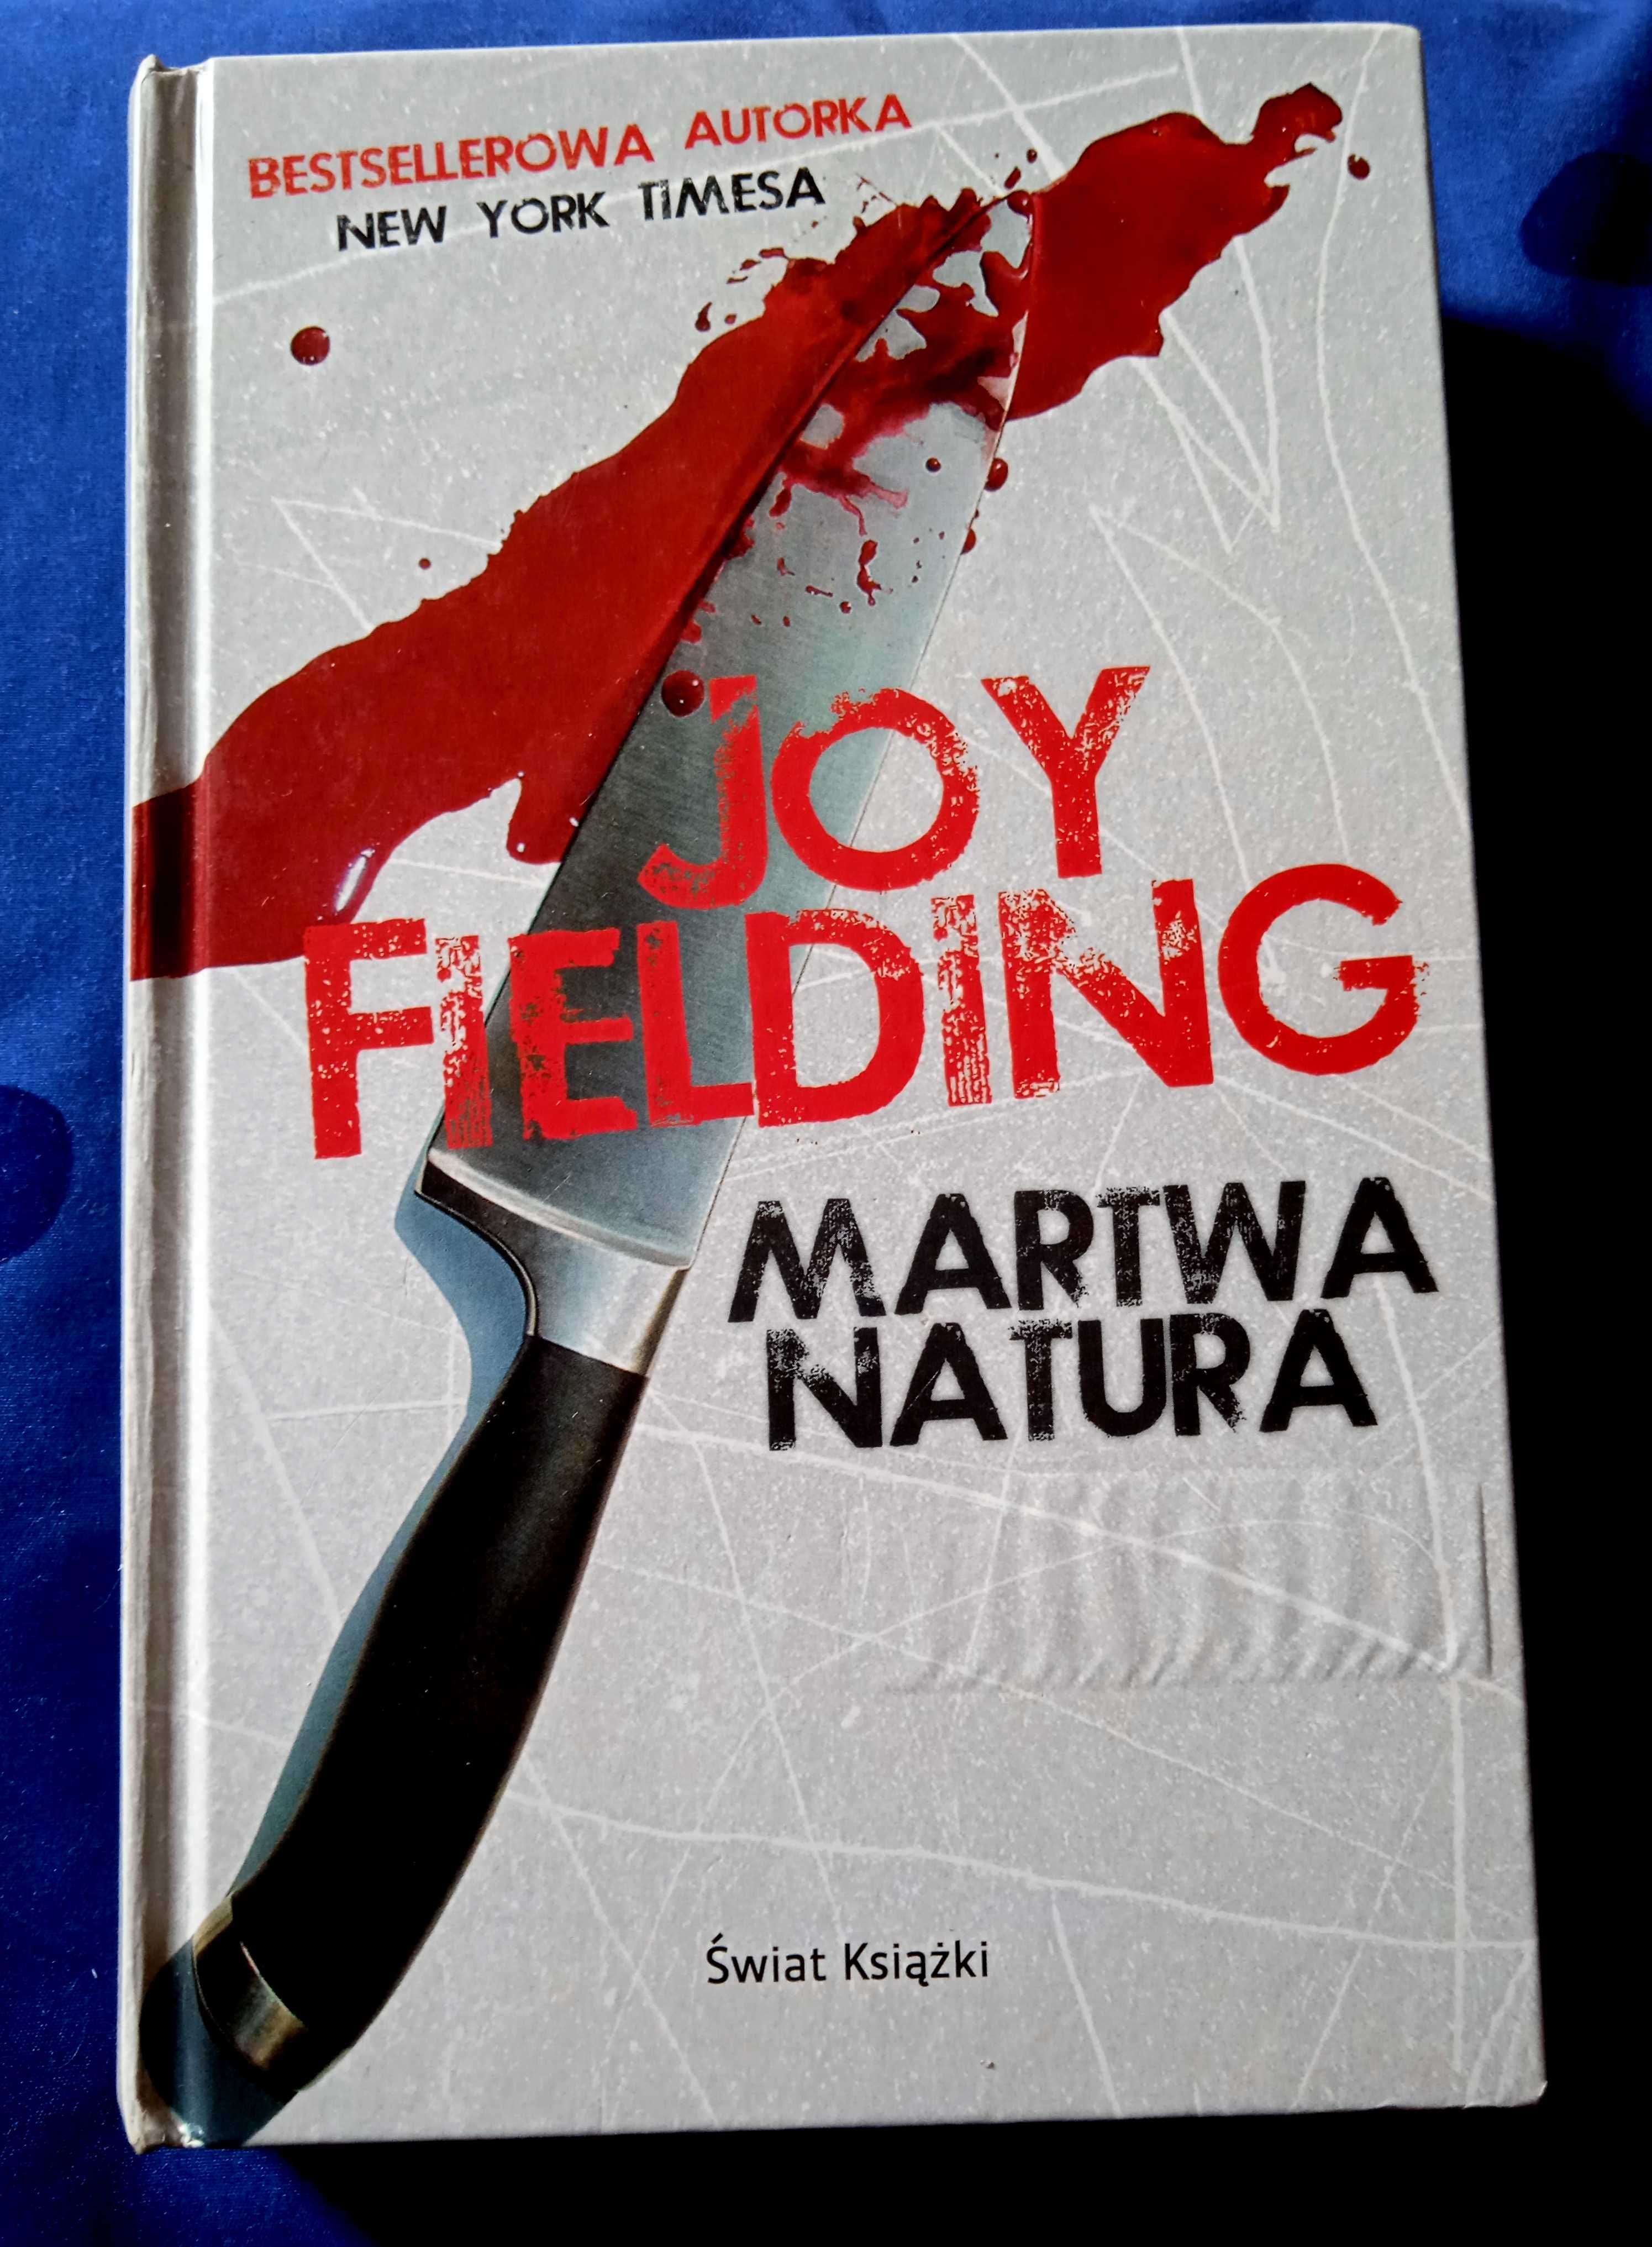 książka "Martwa natura" Joy Fielding